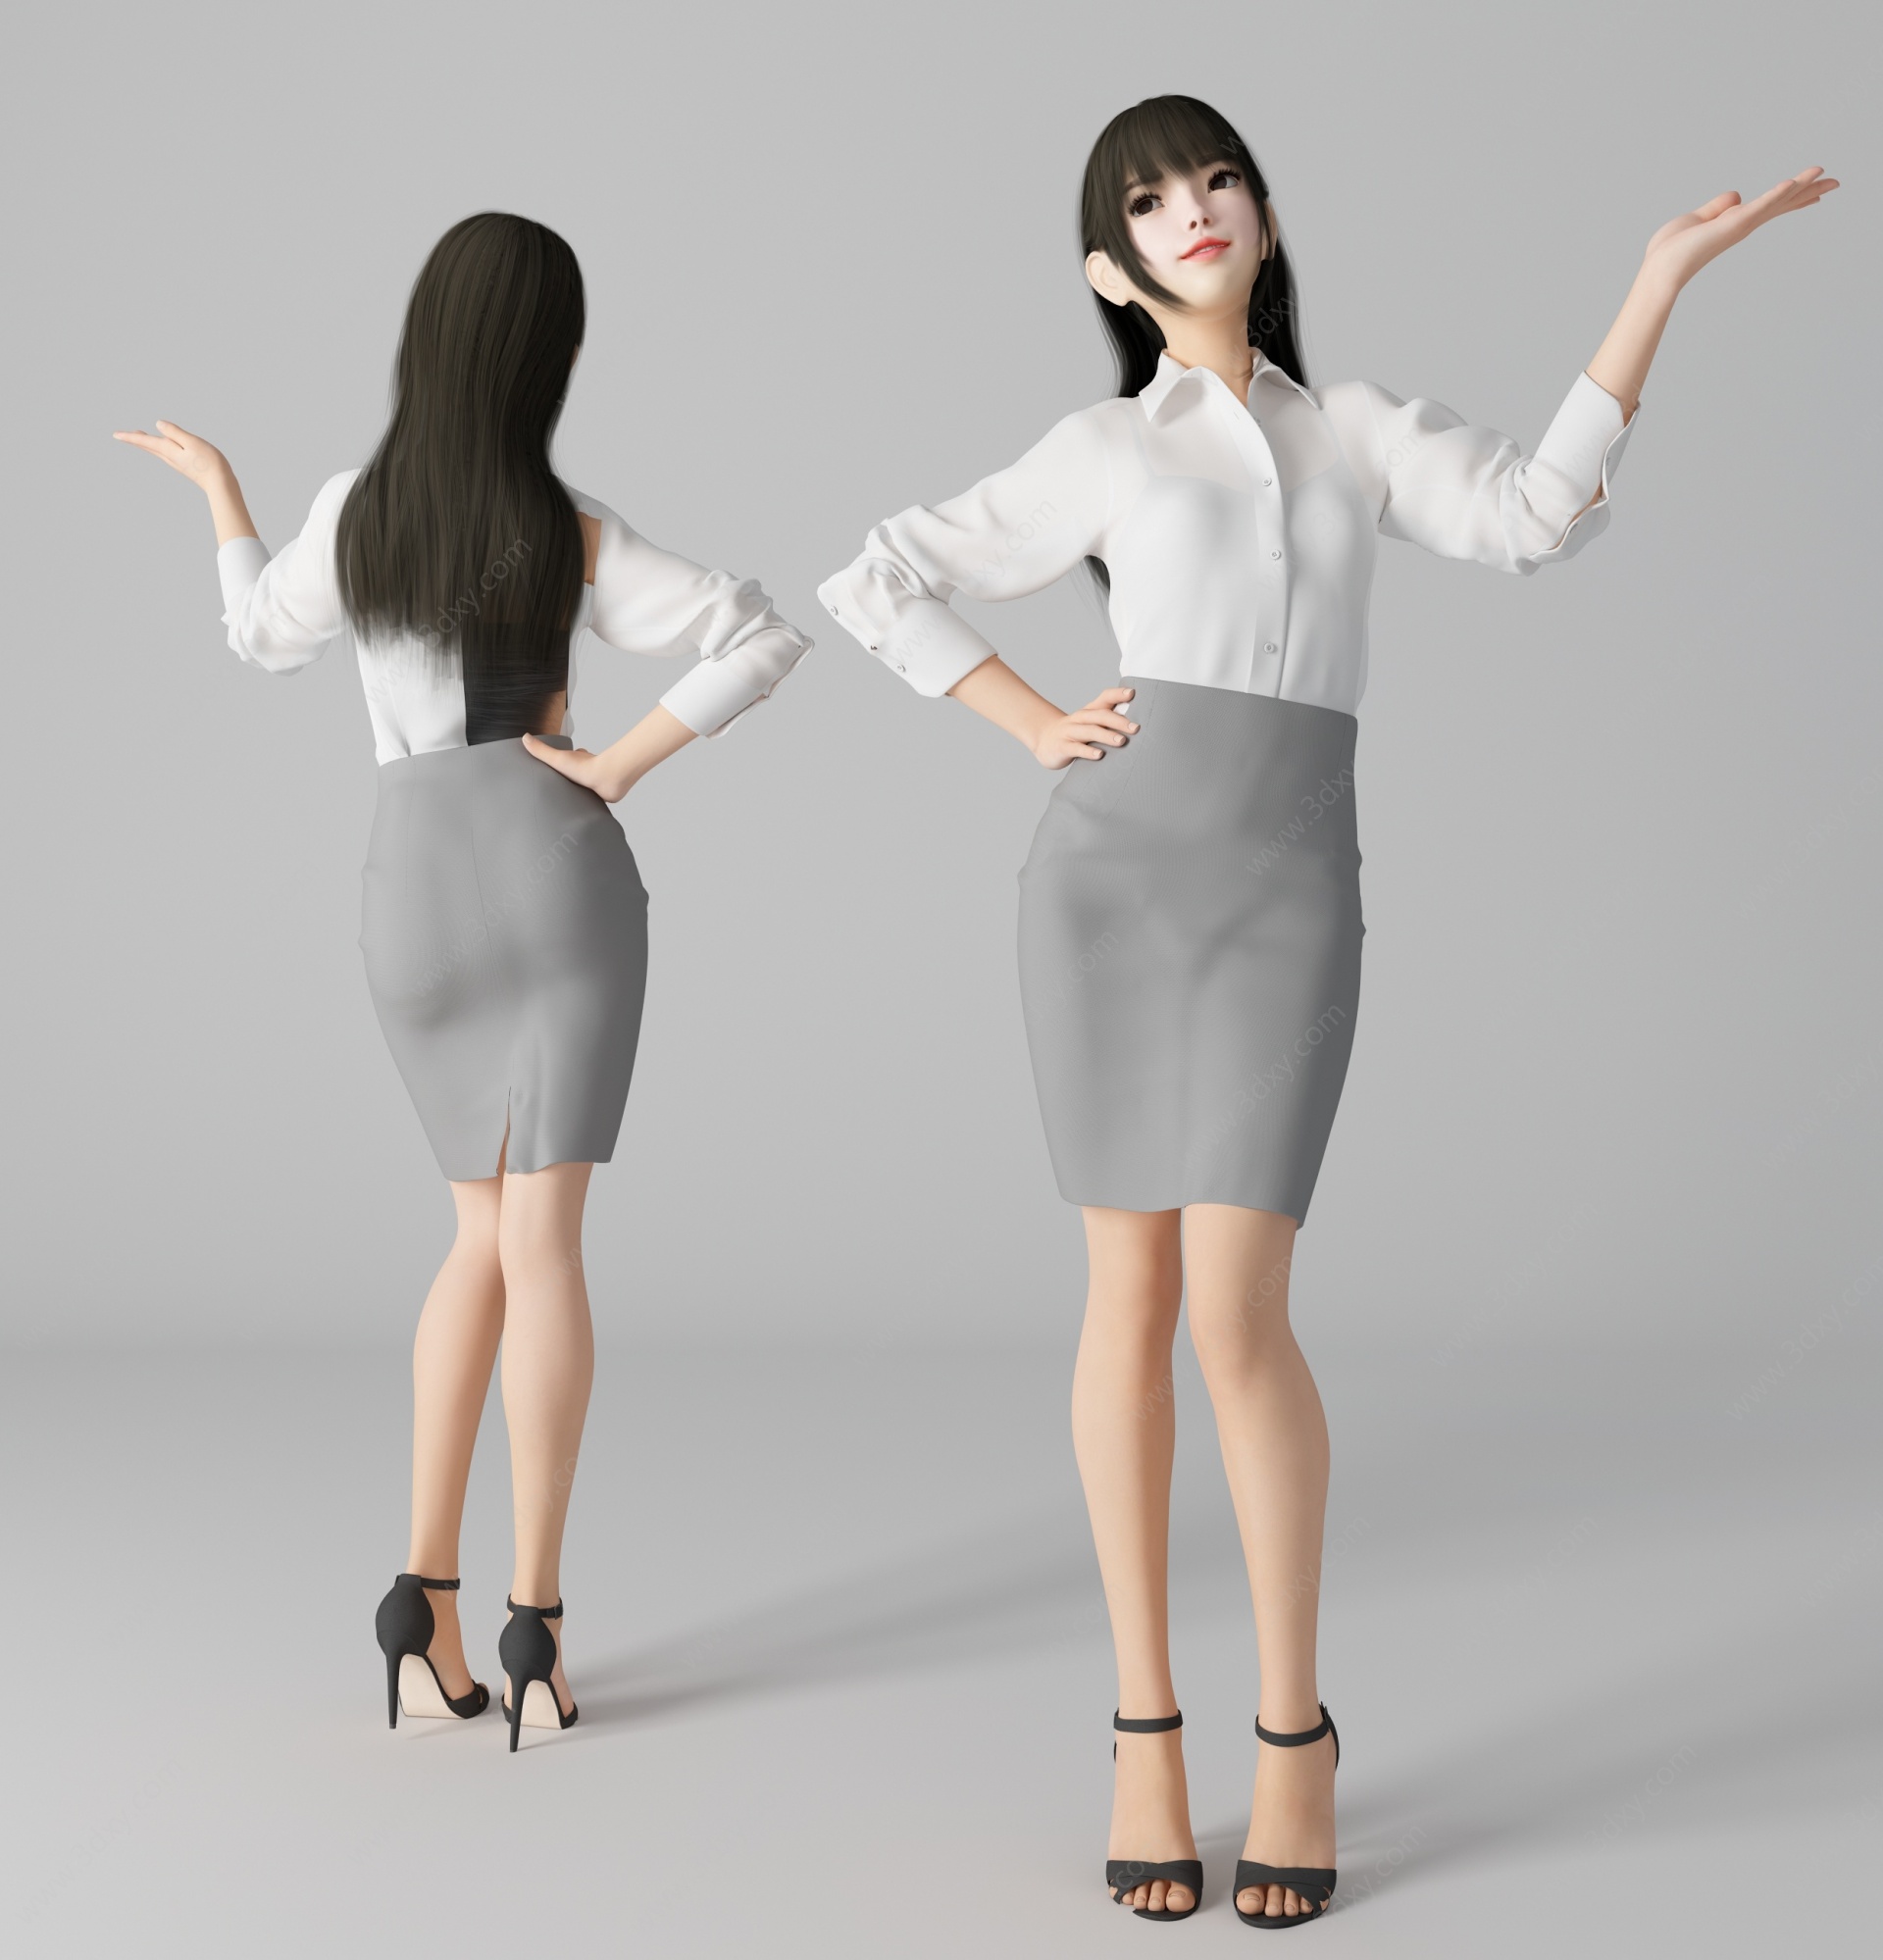 现代风格性感美女人物3D模型